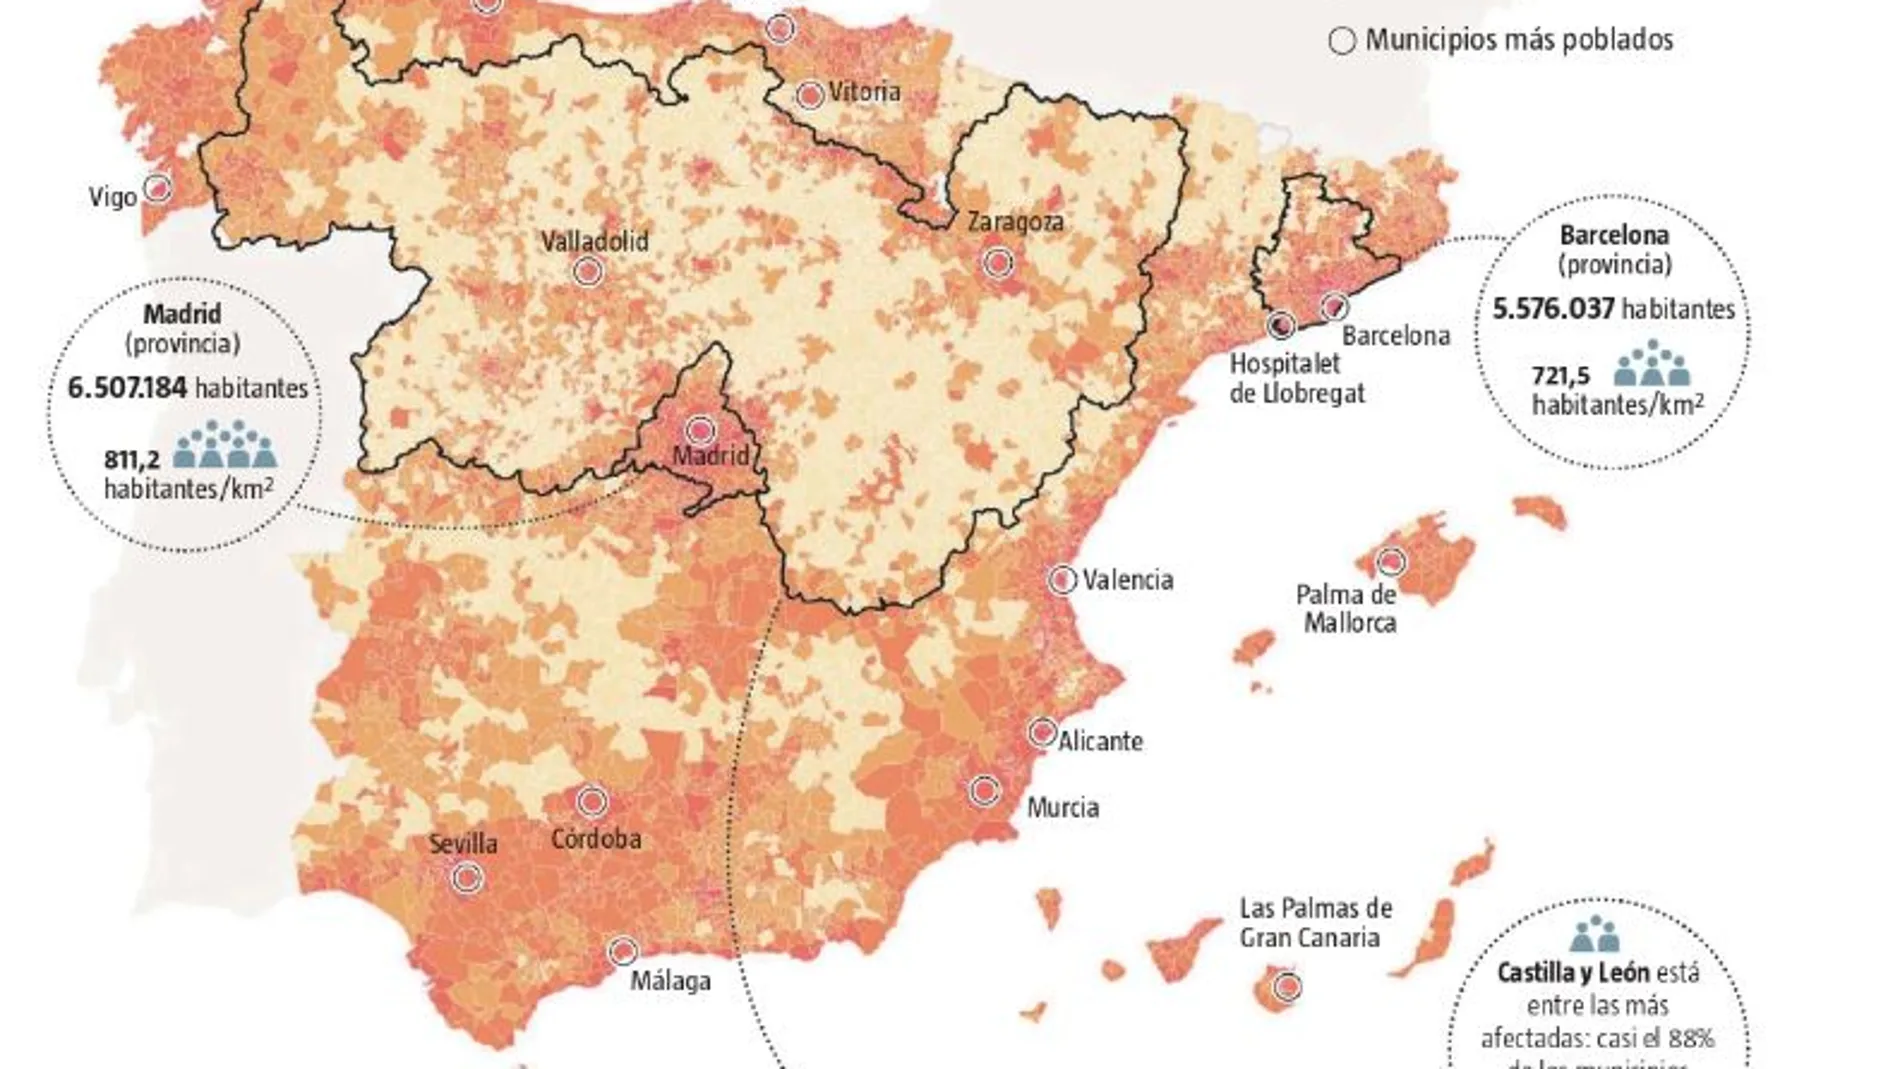 La España vacía: Siete vecinos por km2